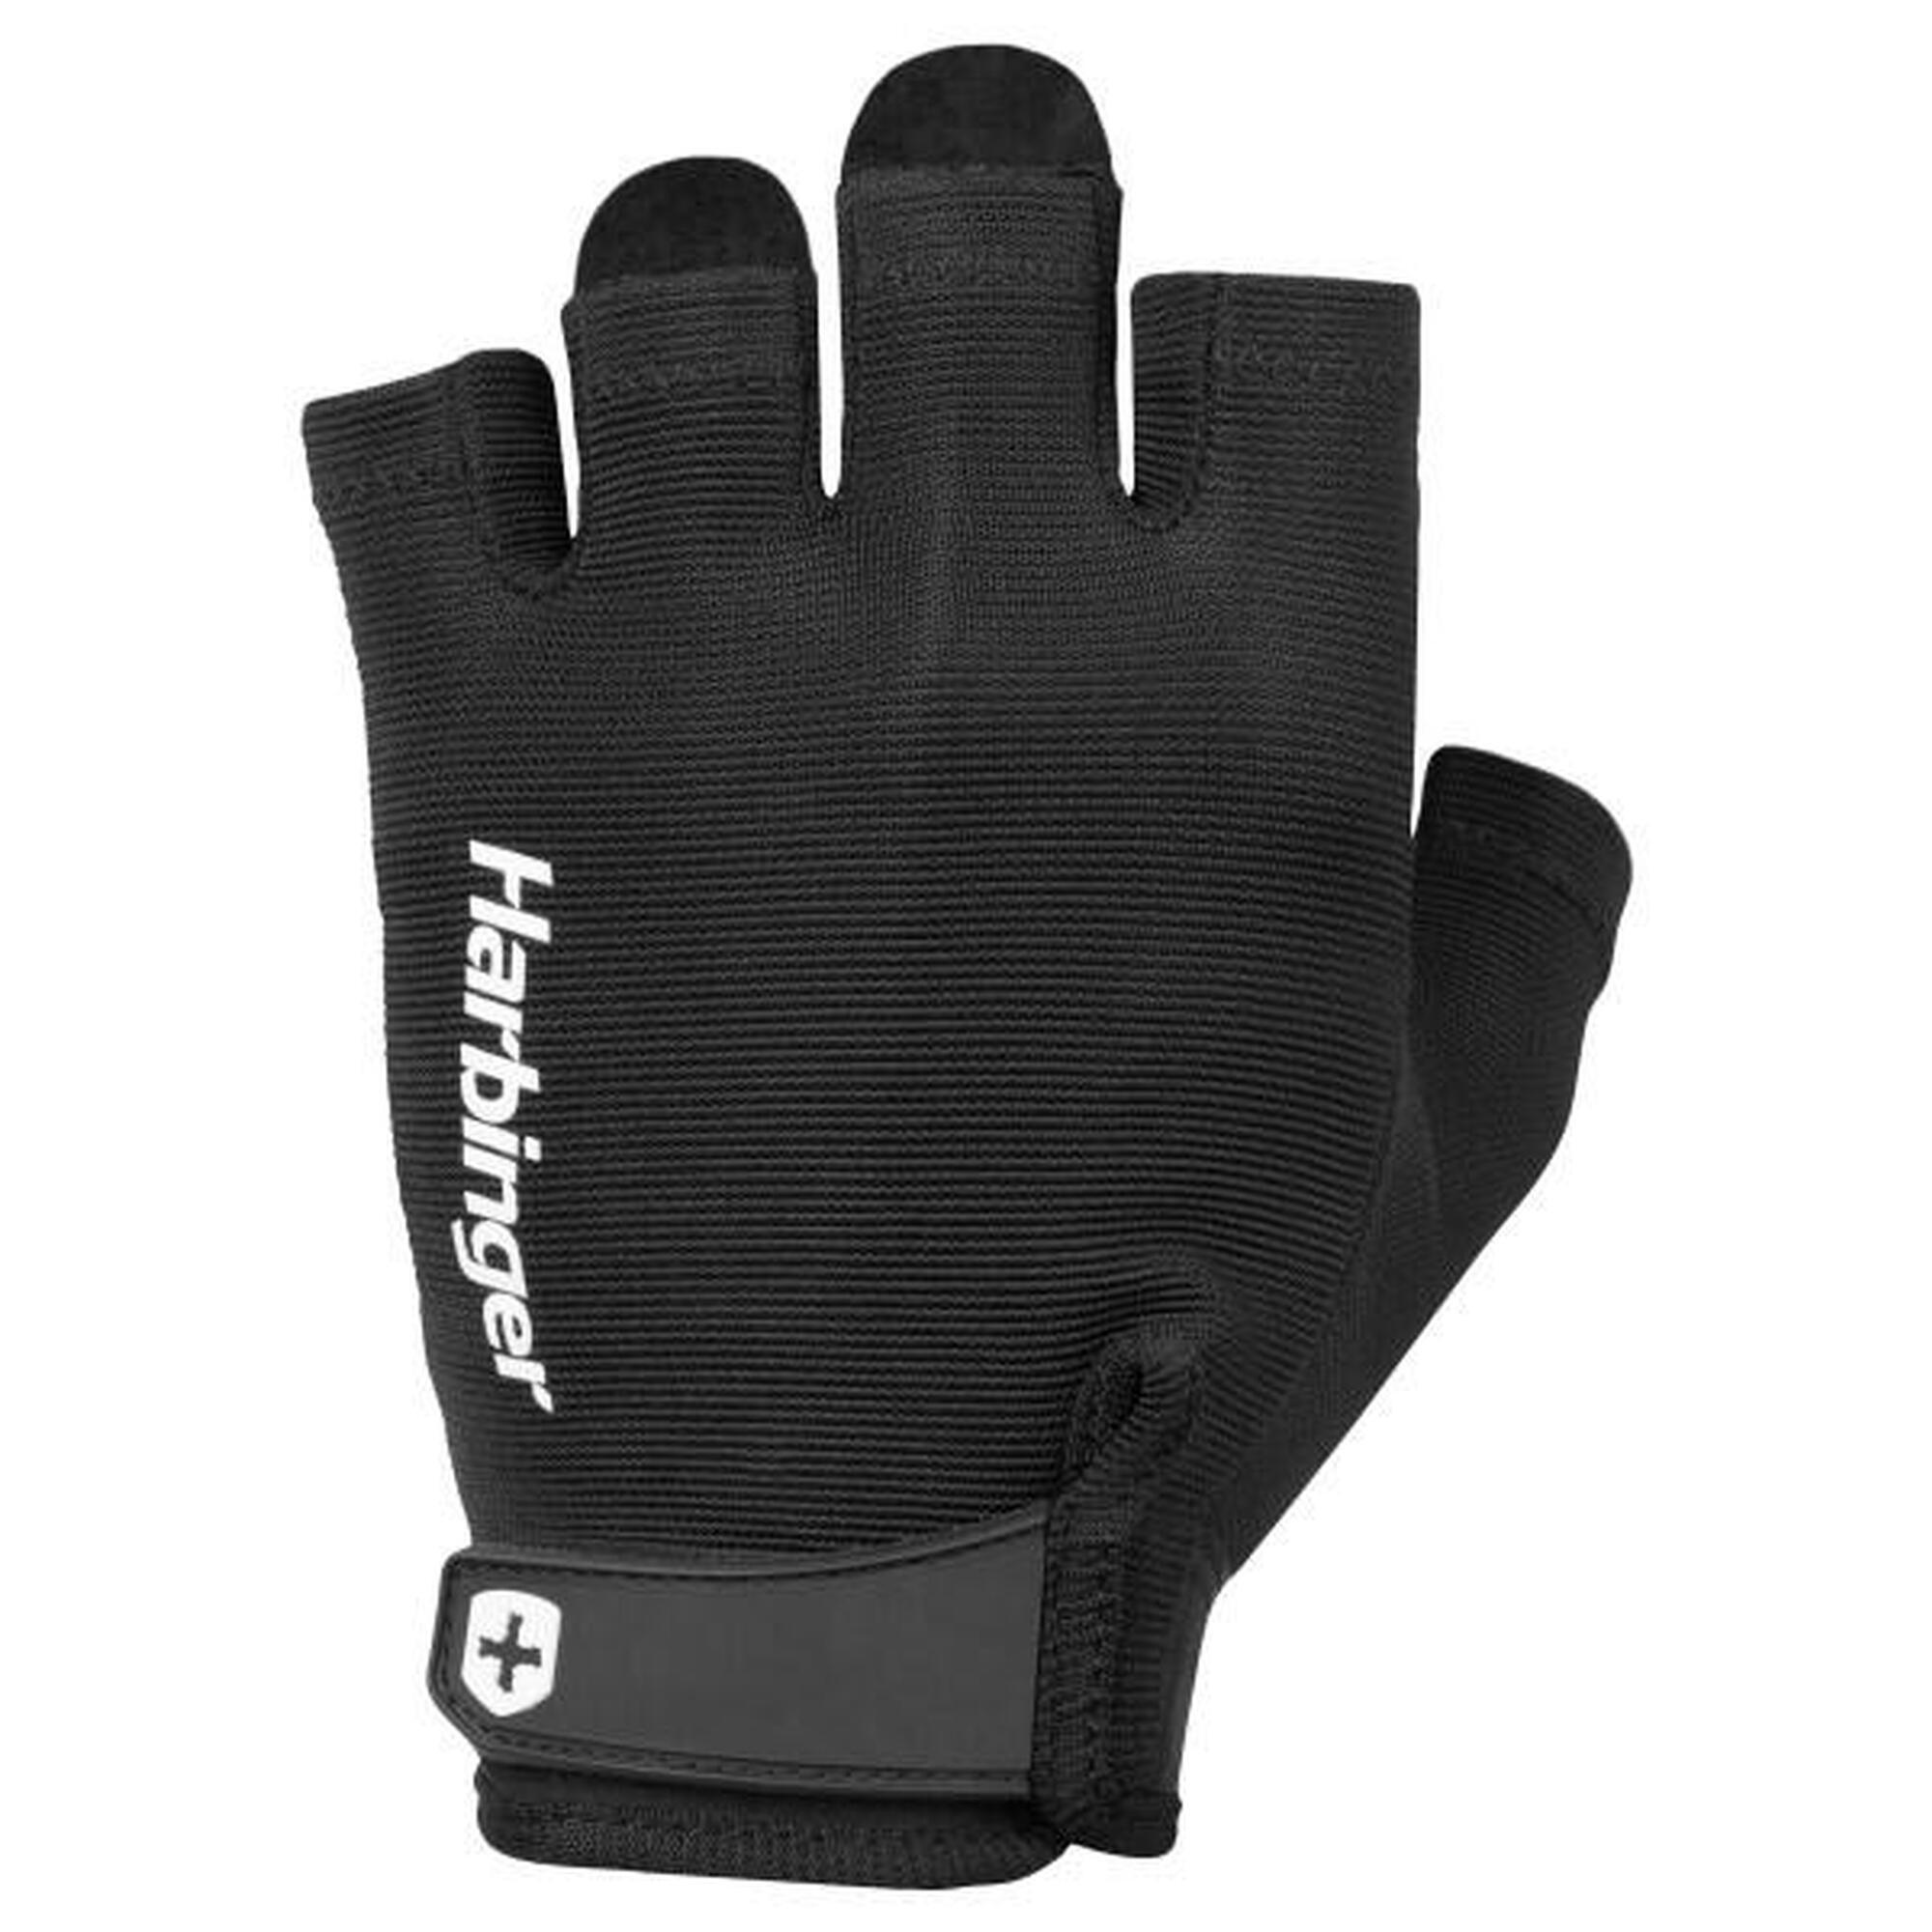 Harbinger gants d'haltérophilie avec prise ferme, confort optimal taille S Noir